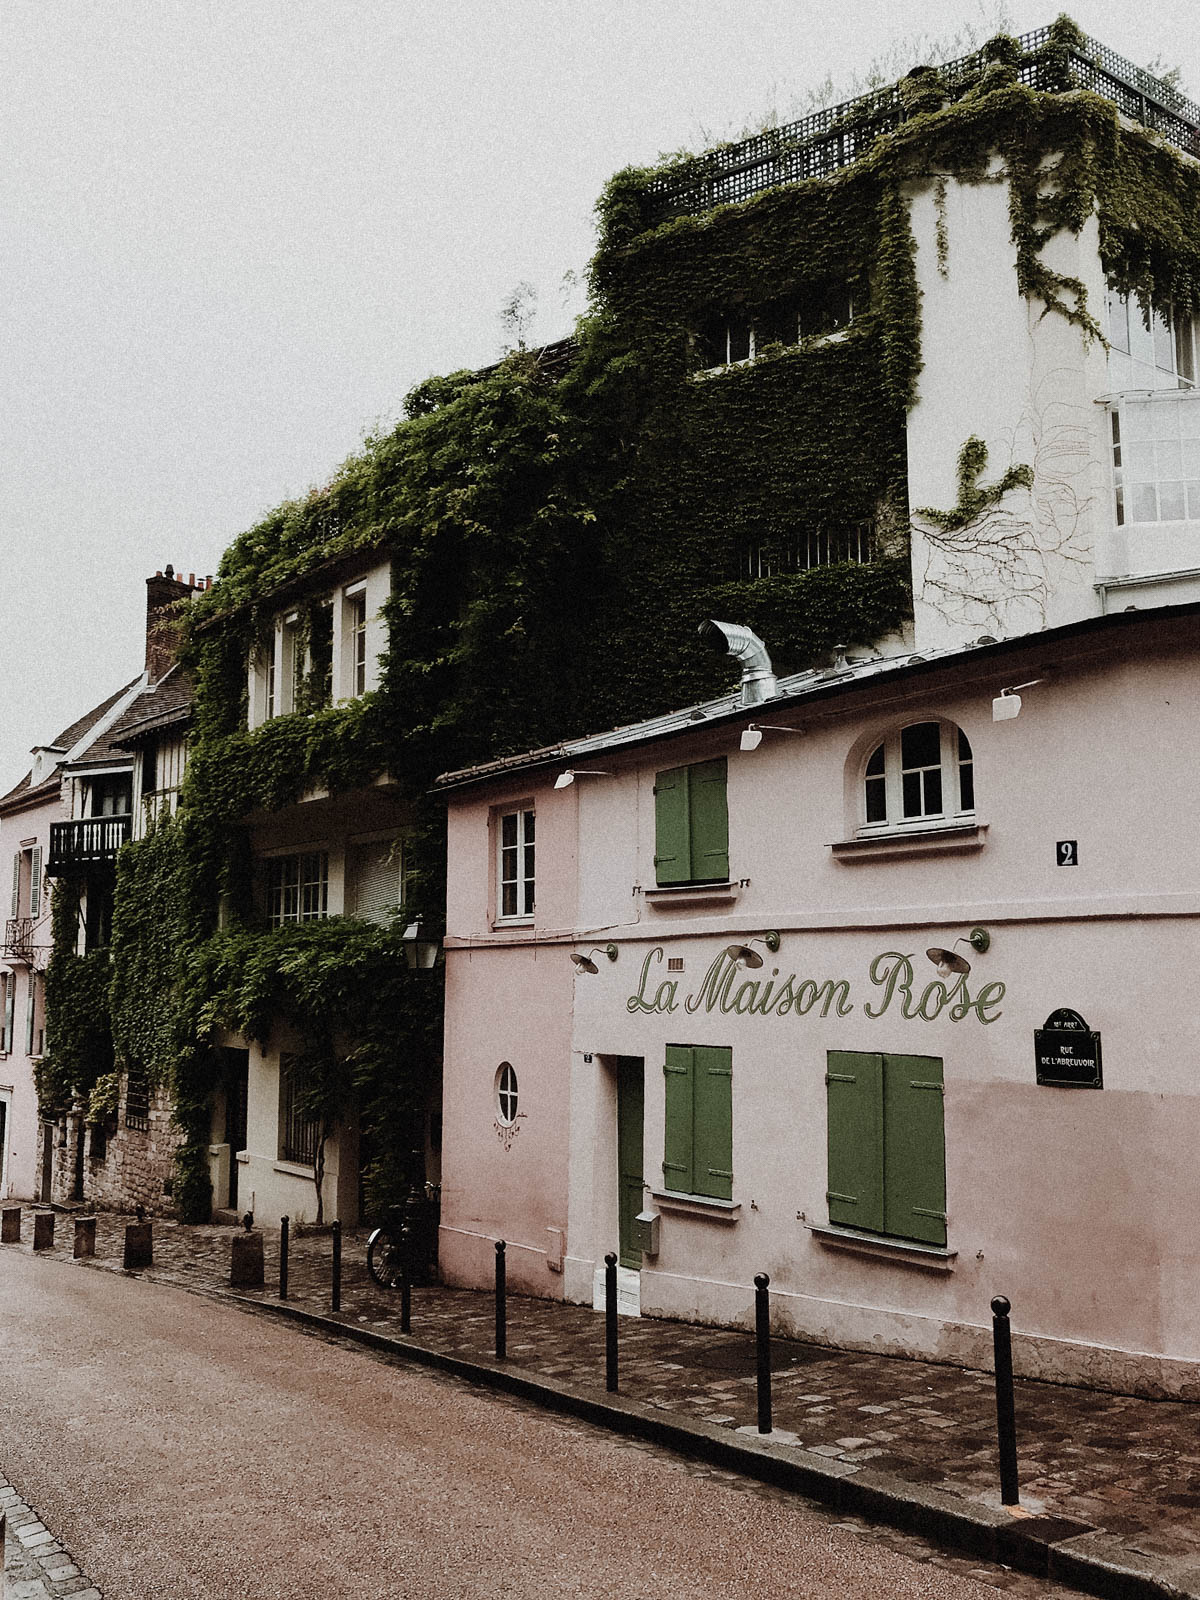 Paris France Travel Guide - La Maison Rose, European Architecture and Buildings / RG Daily Blog